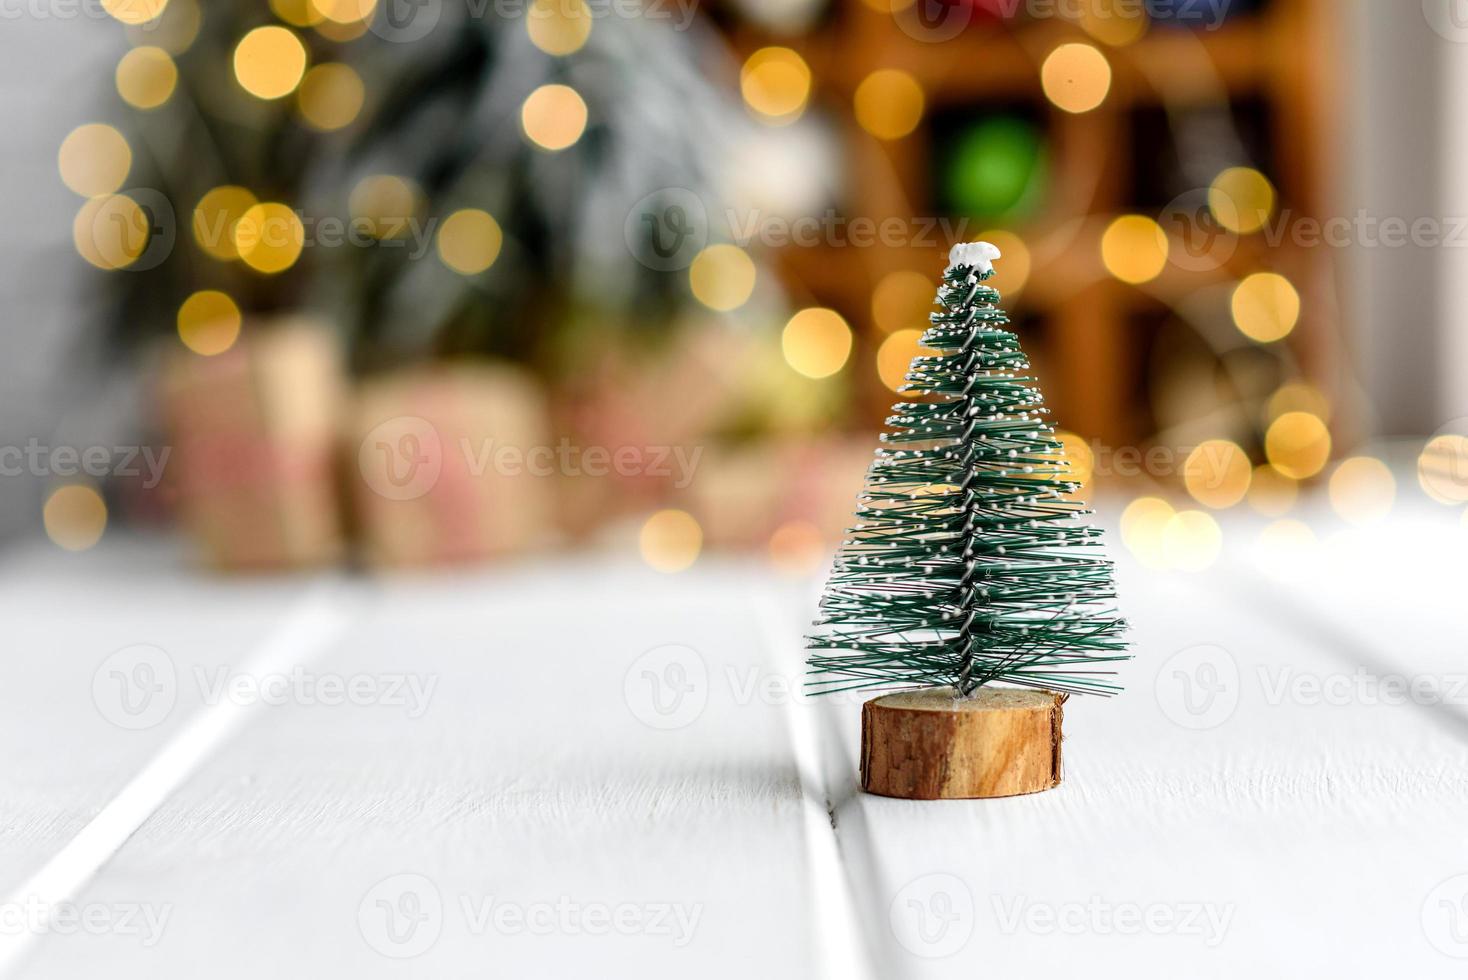 schöner bunter Weihnachtsschmuck auf einem hellen Holztisch foto